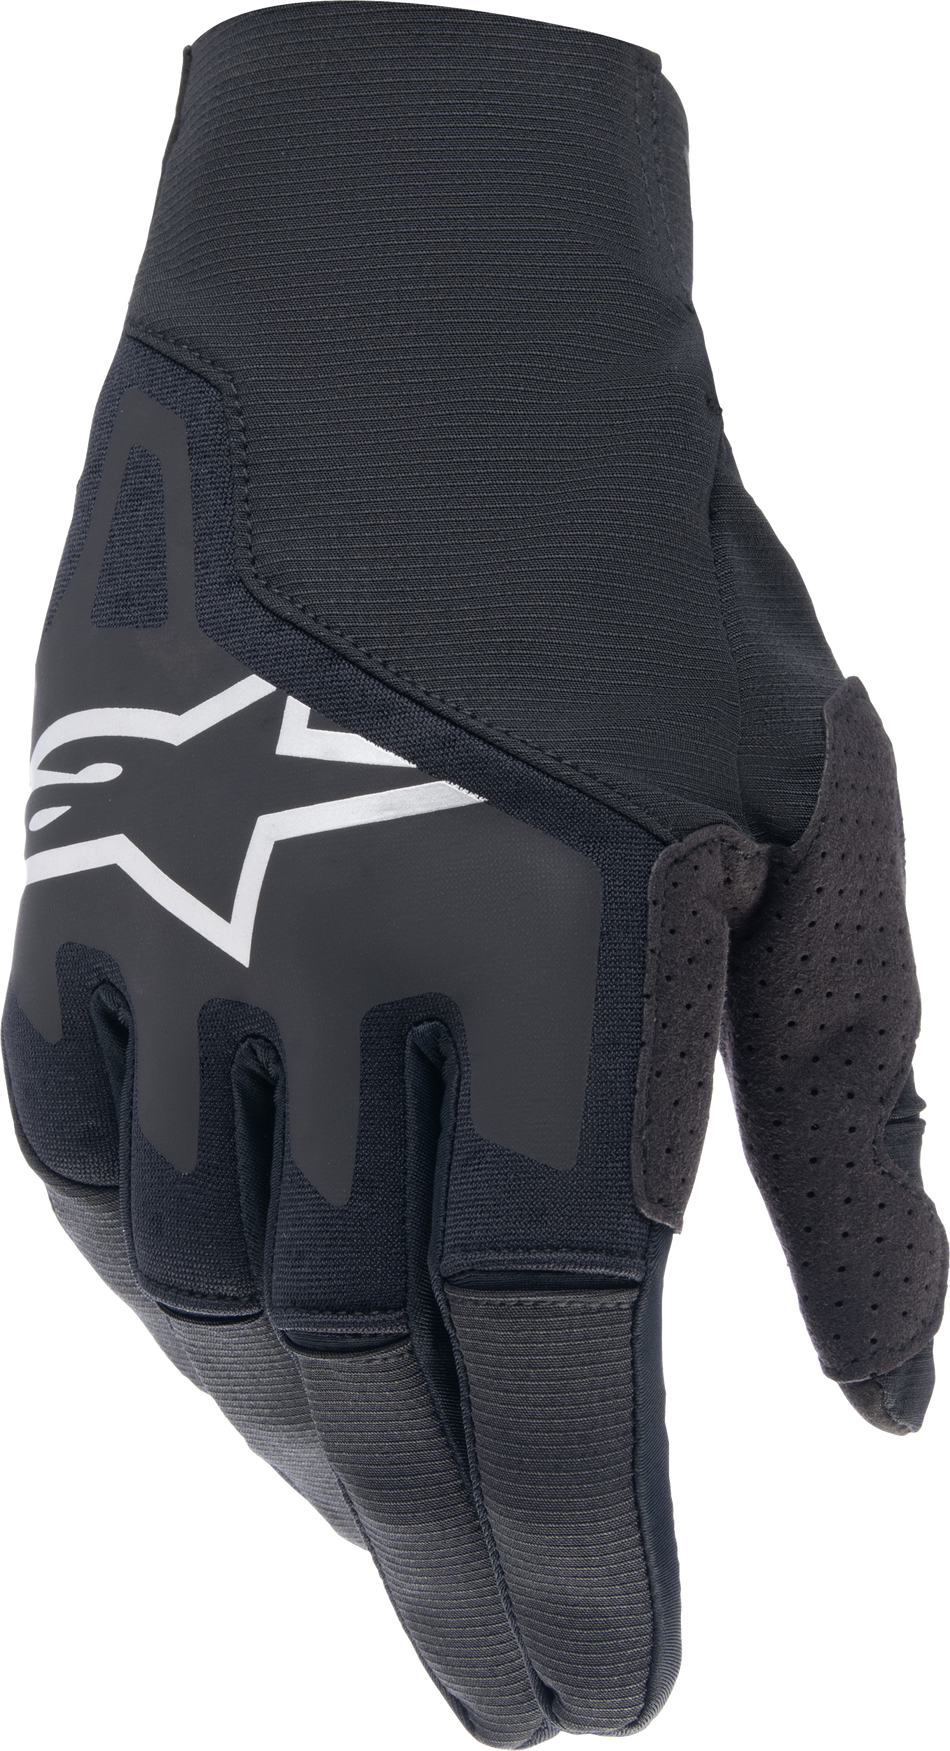 ALPINESTARS Techstar Gloves Black Sm 3561024-10-S